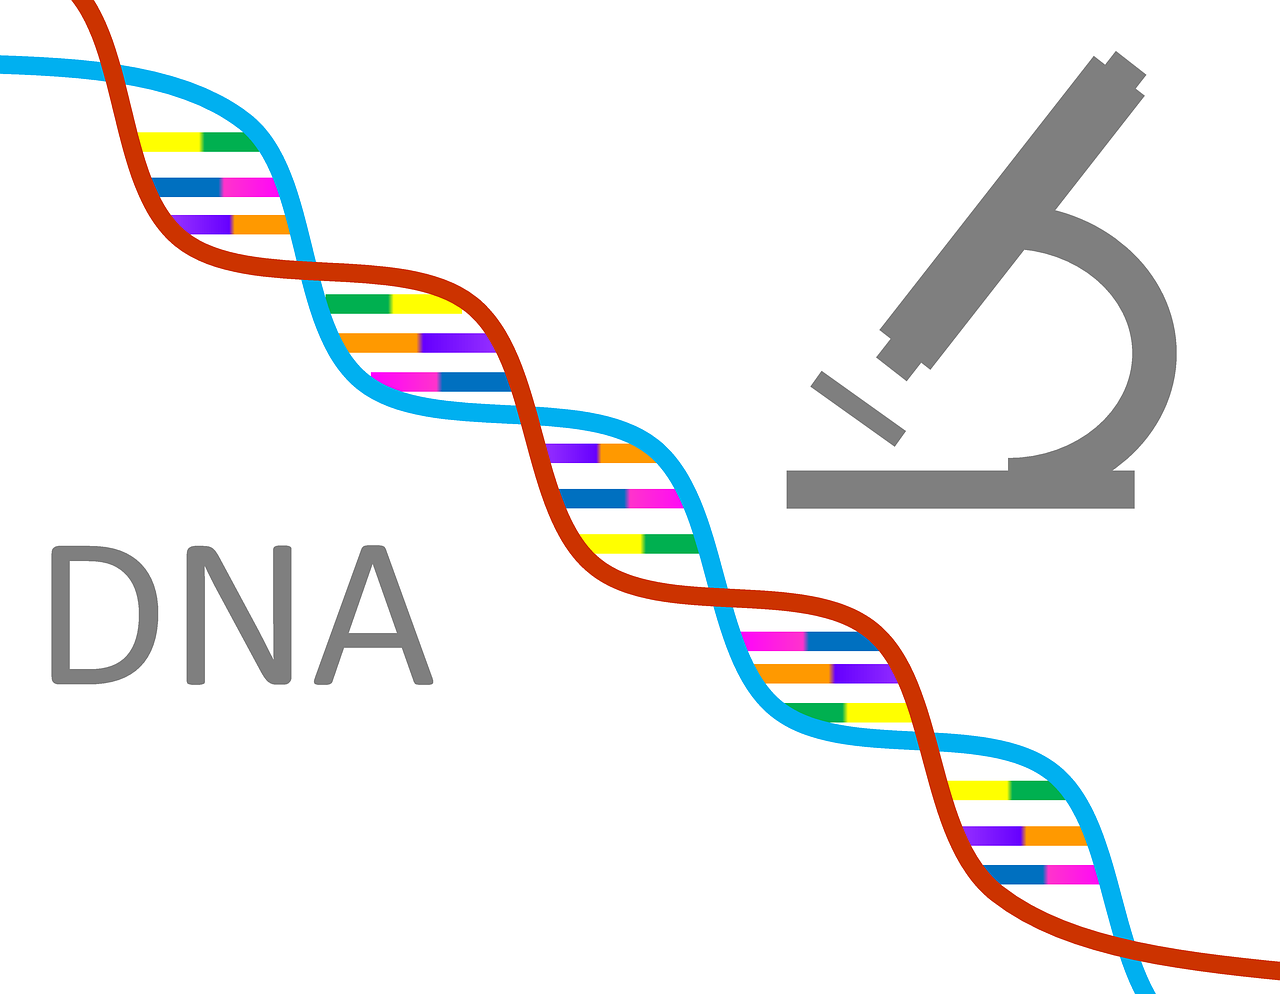 DNA and longevity